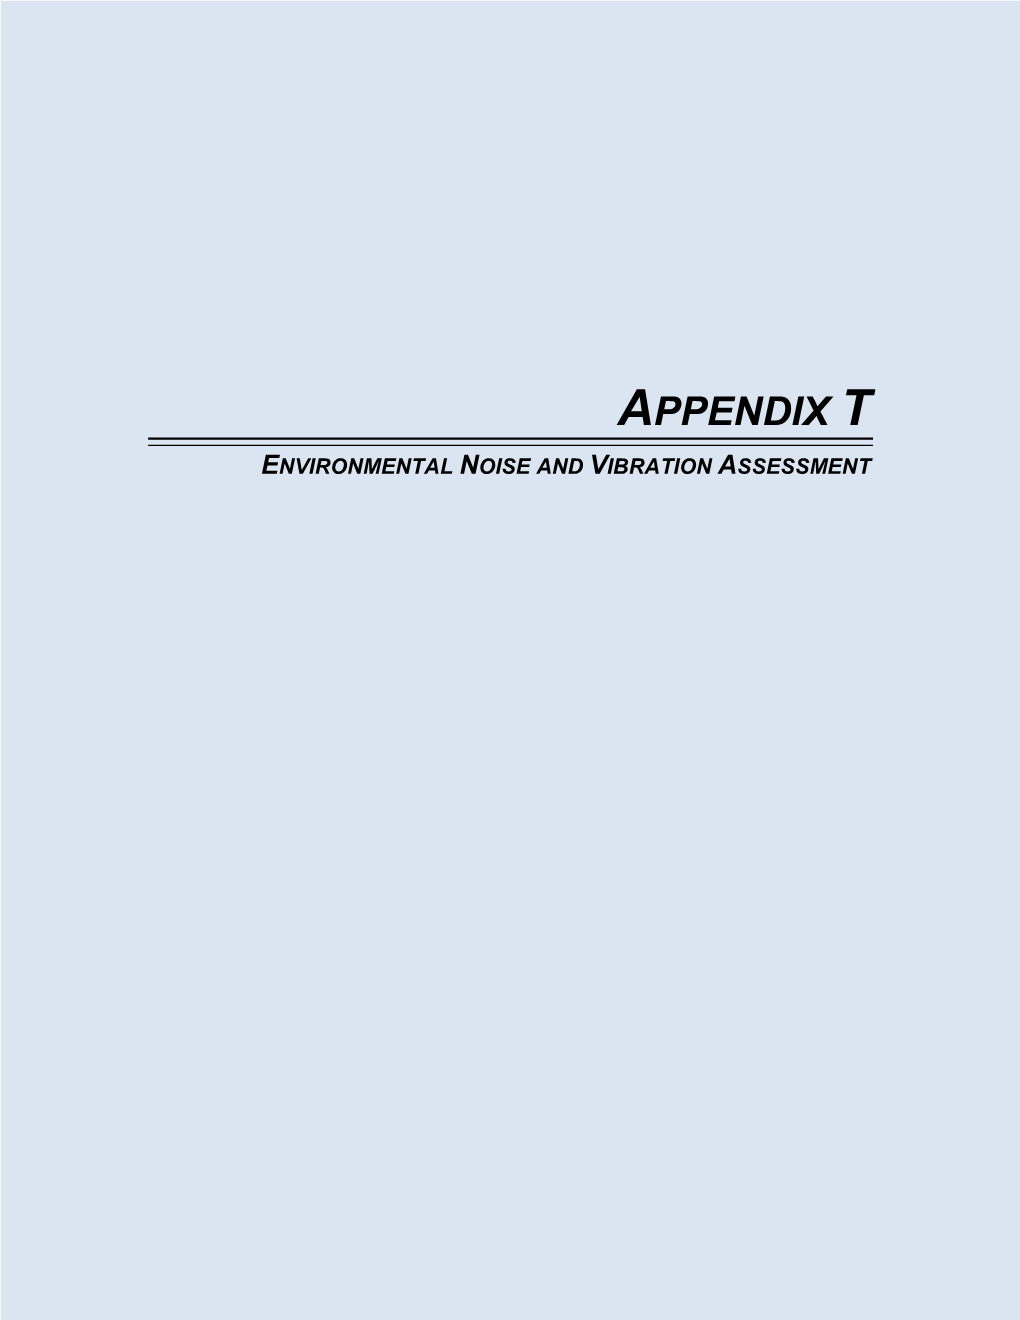 Appendix T. Environmental Noise and Vibration Assessment